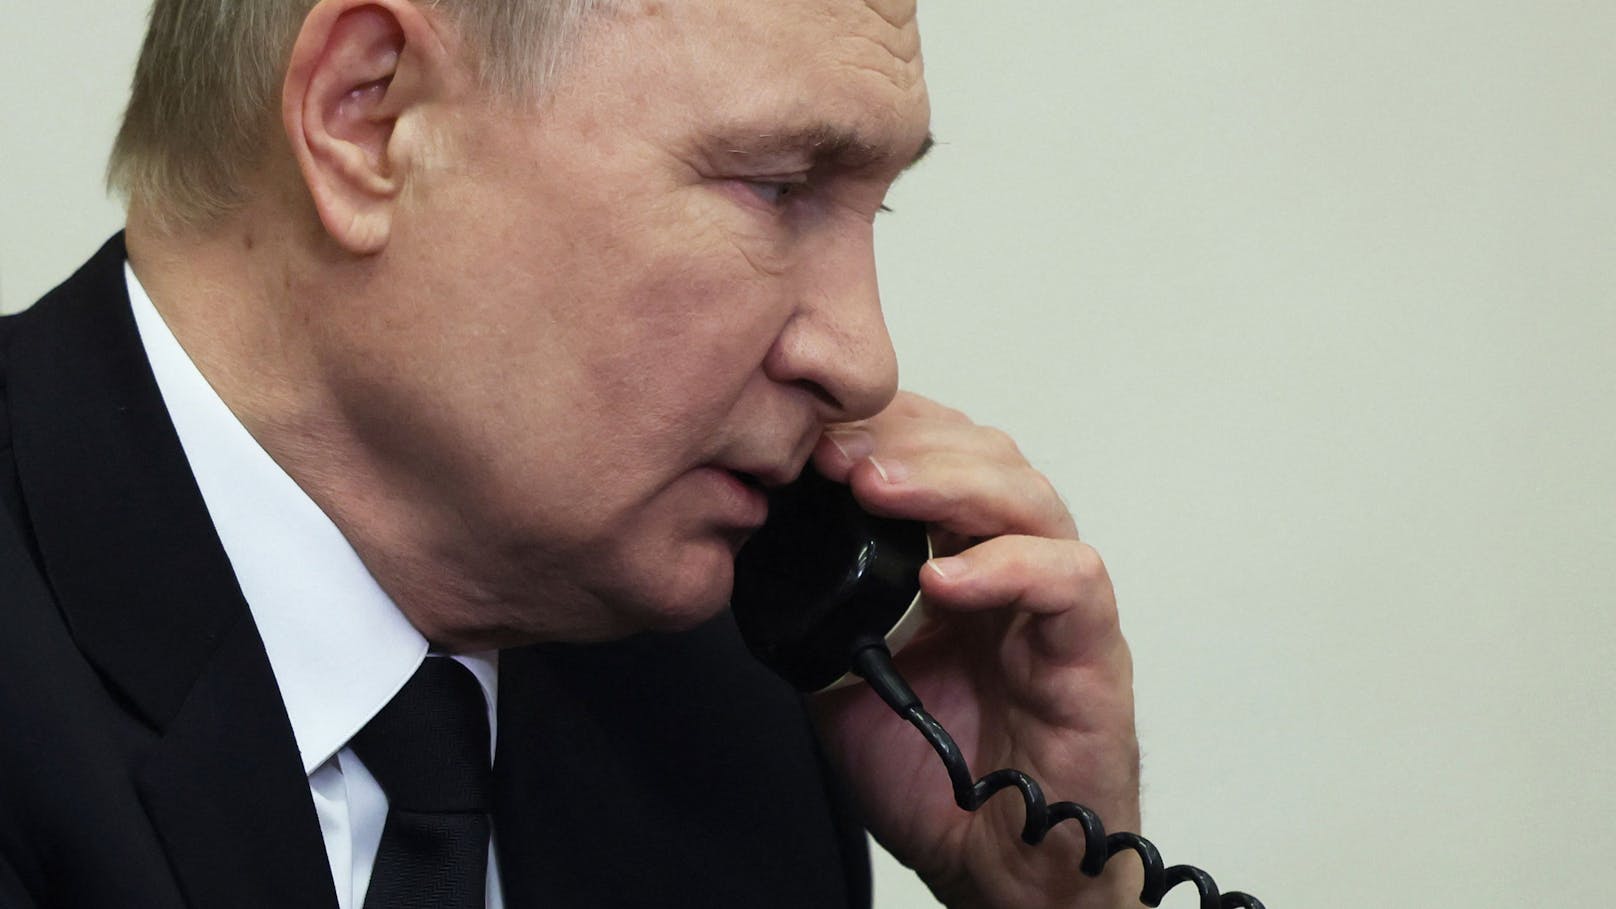 "19 Stunden Schweigen – Putin war offenbar überrascht"